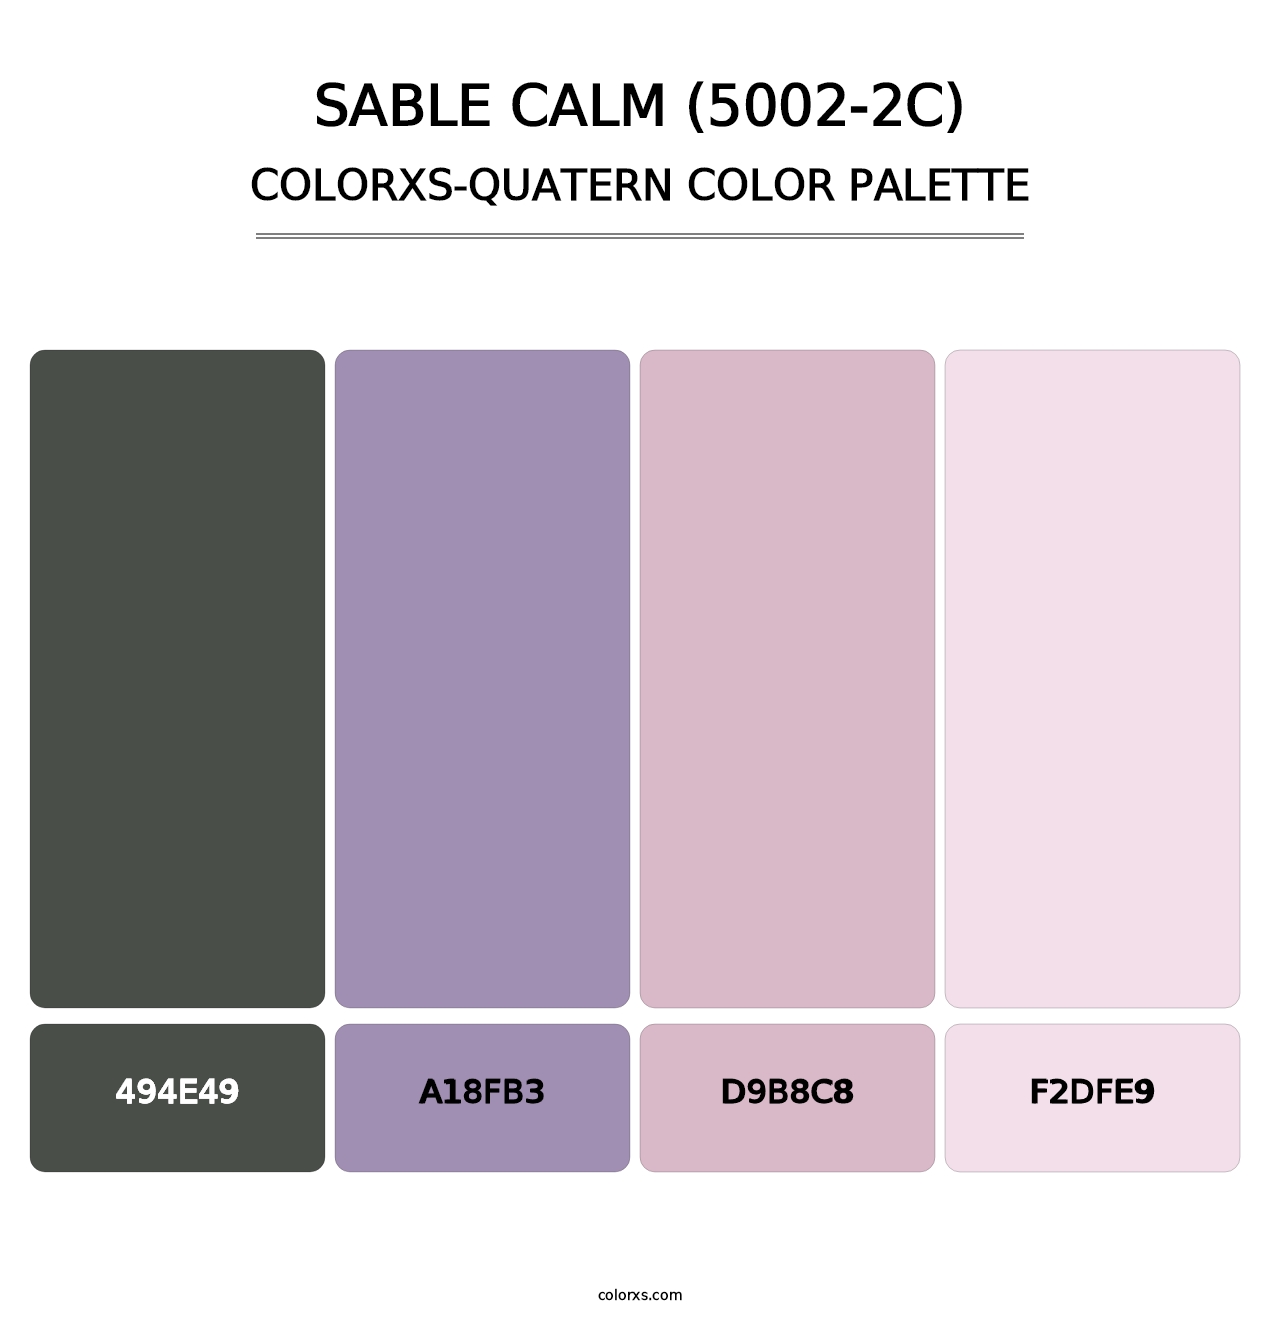 Sable Calm (5002-2C) - Colorxs Quatern Palette